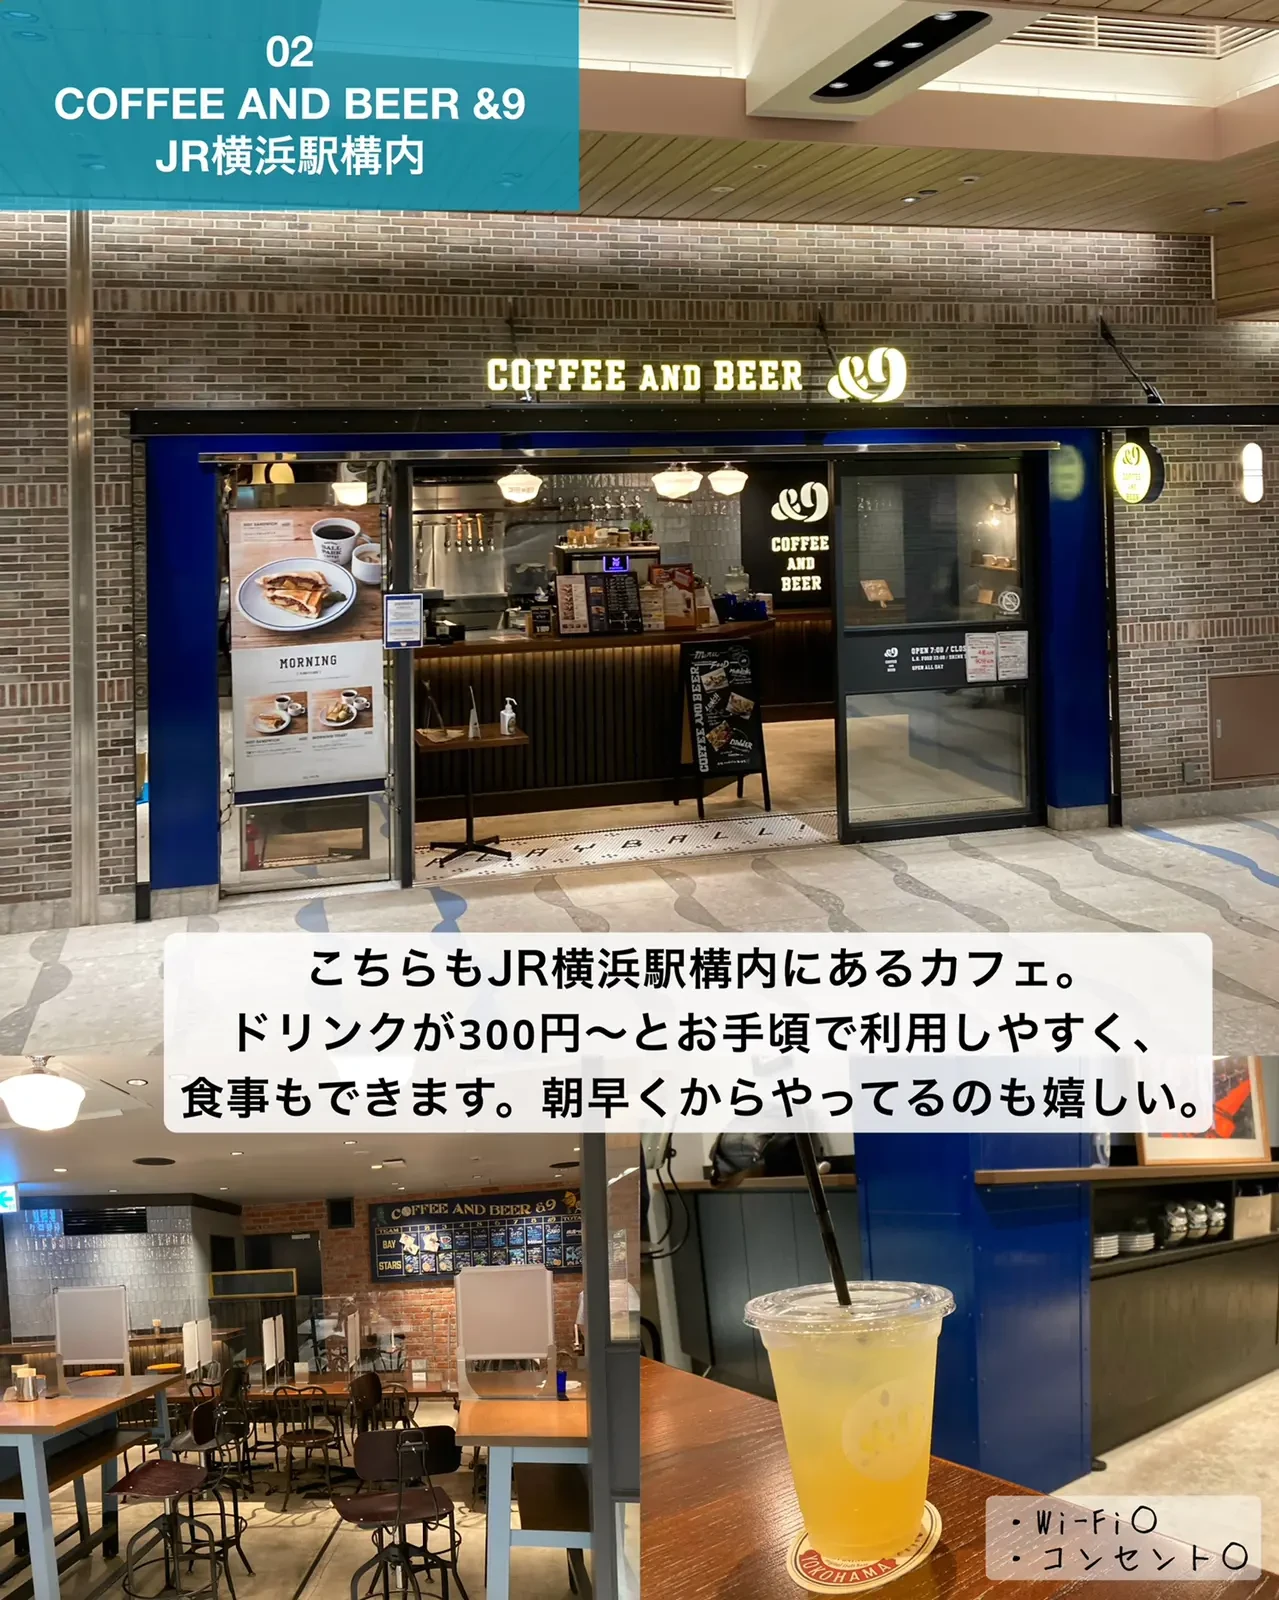 もう困らない 横浜駅のオススメカフェ7選 ゆき カフェ巡り 東京 神奈川が投稿したフォトブック Lemon8